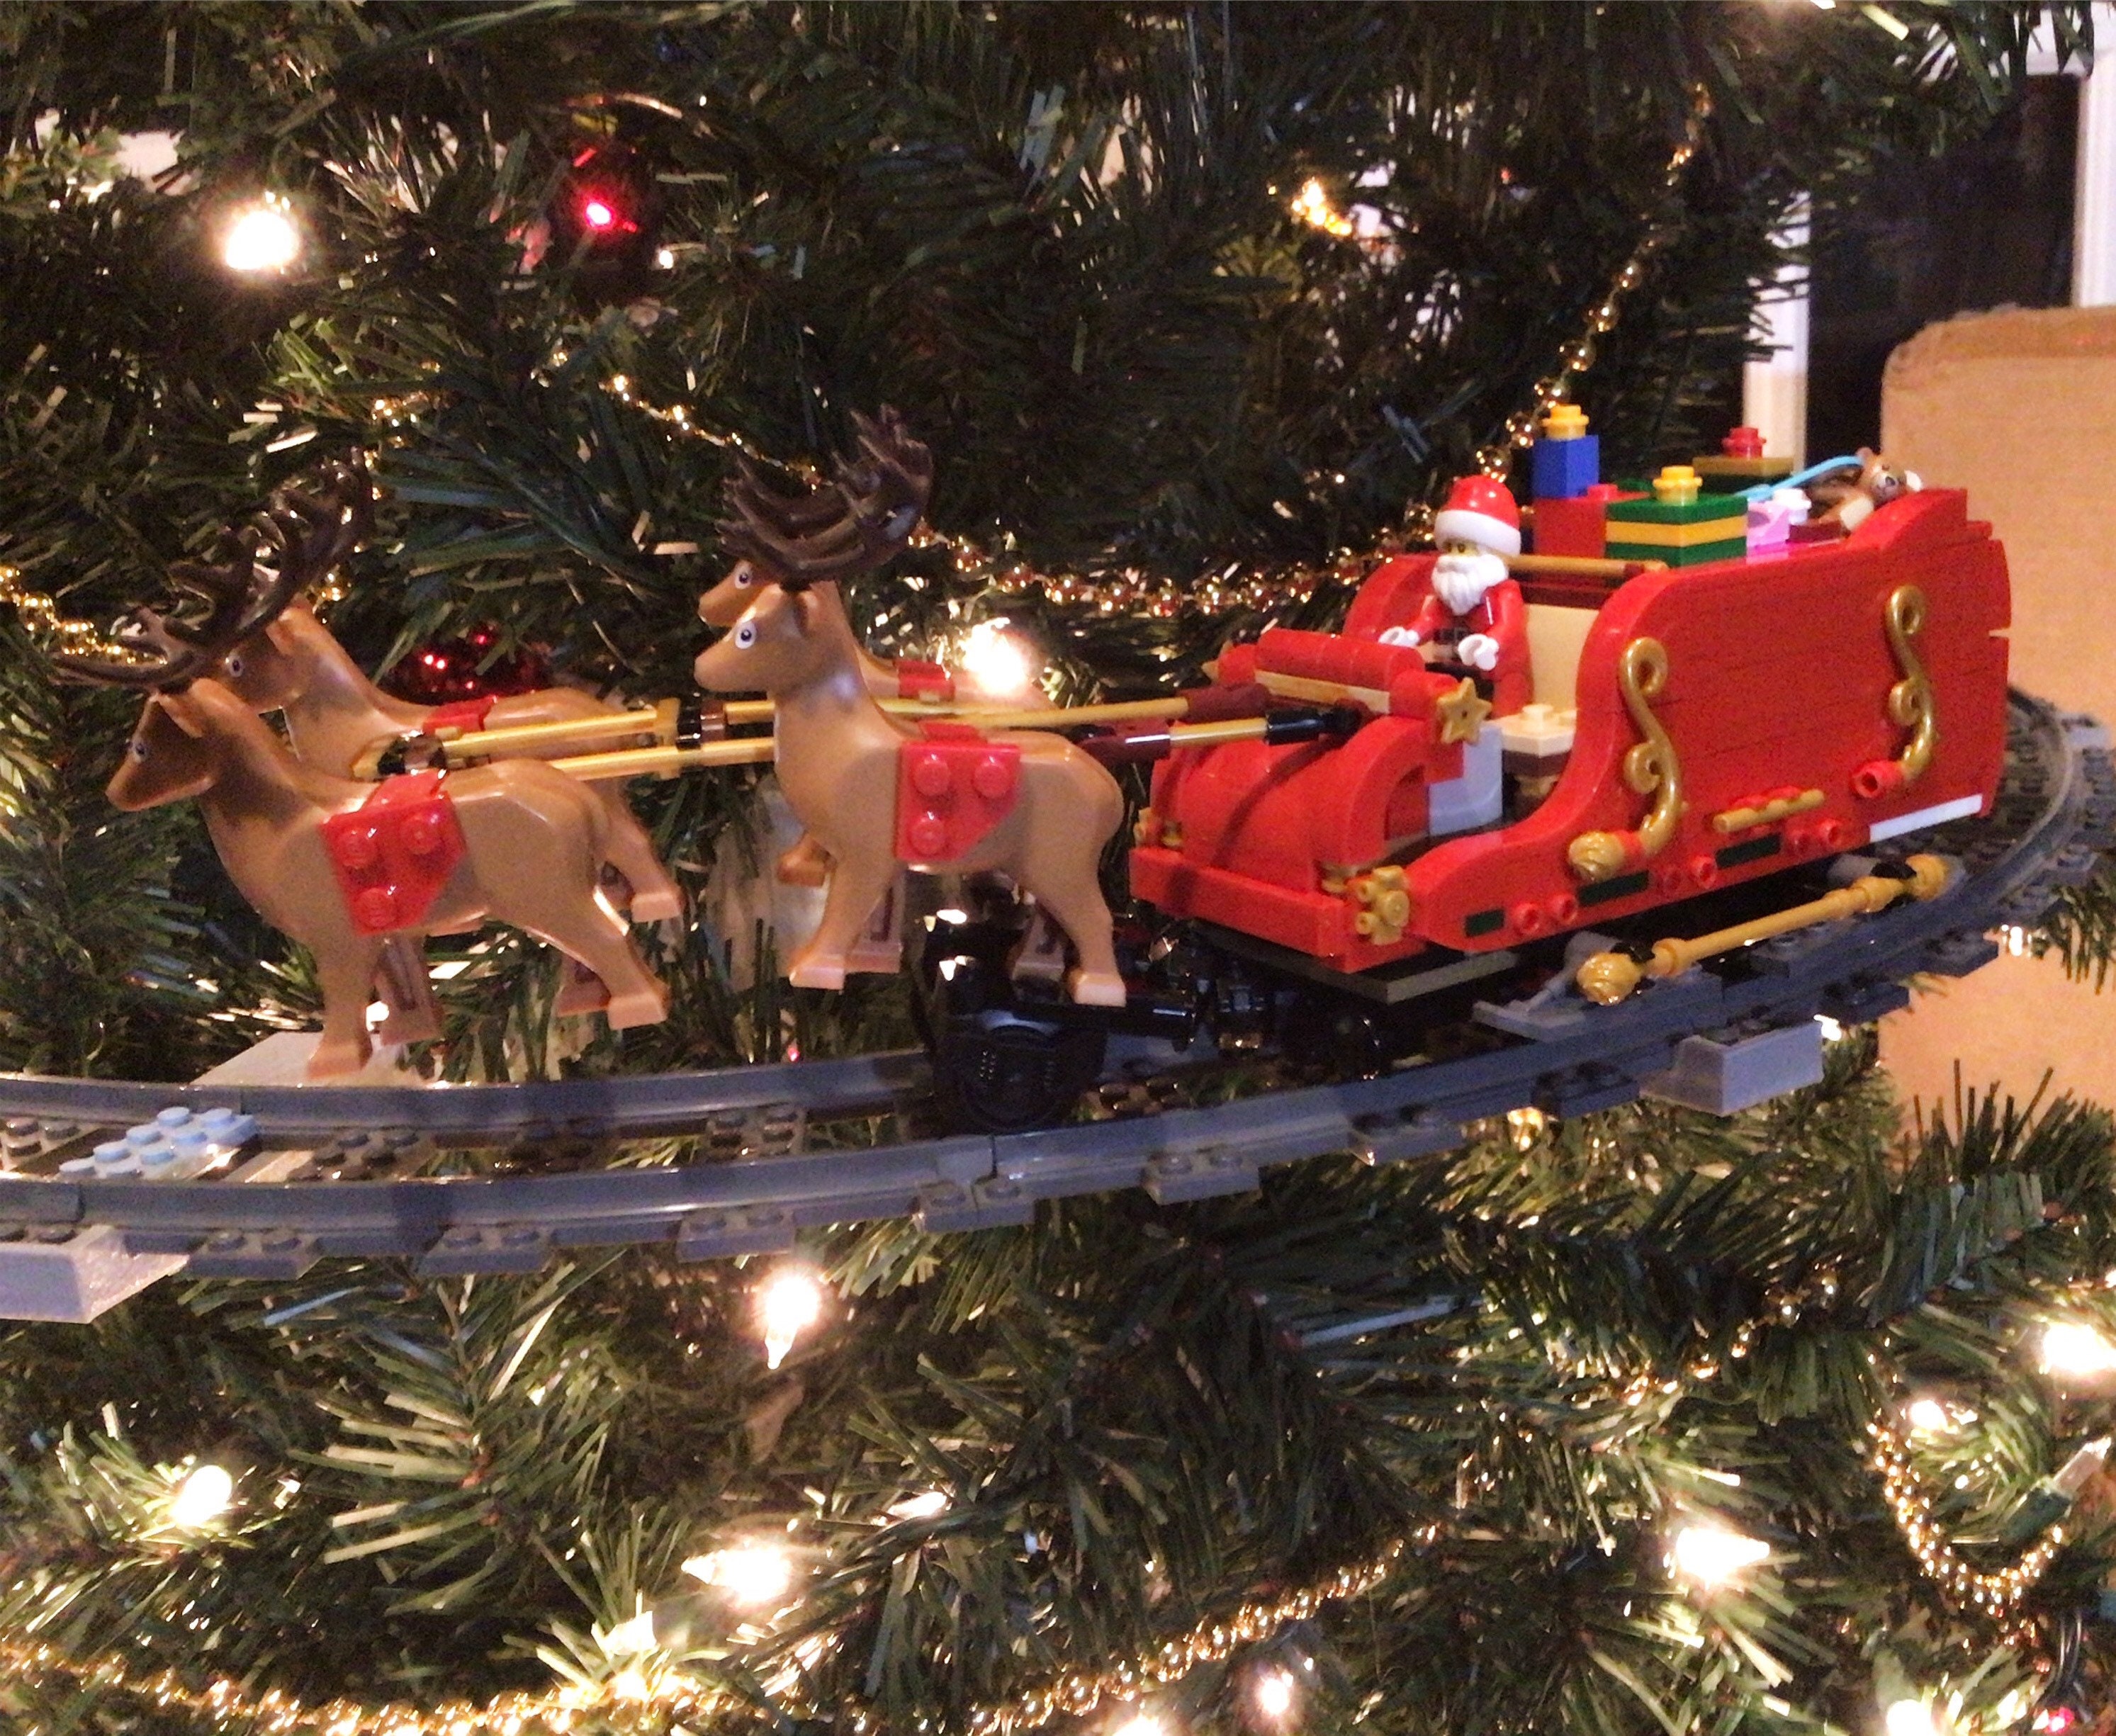 Christmas Tree Train